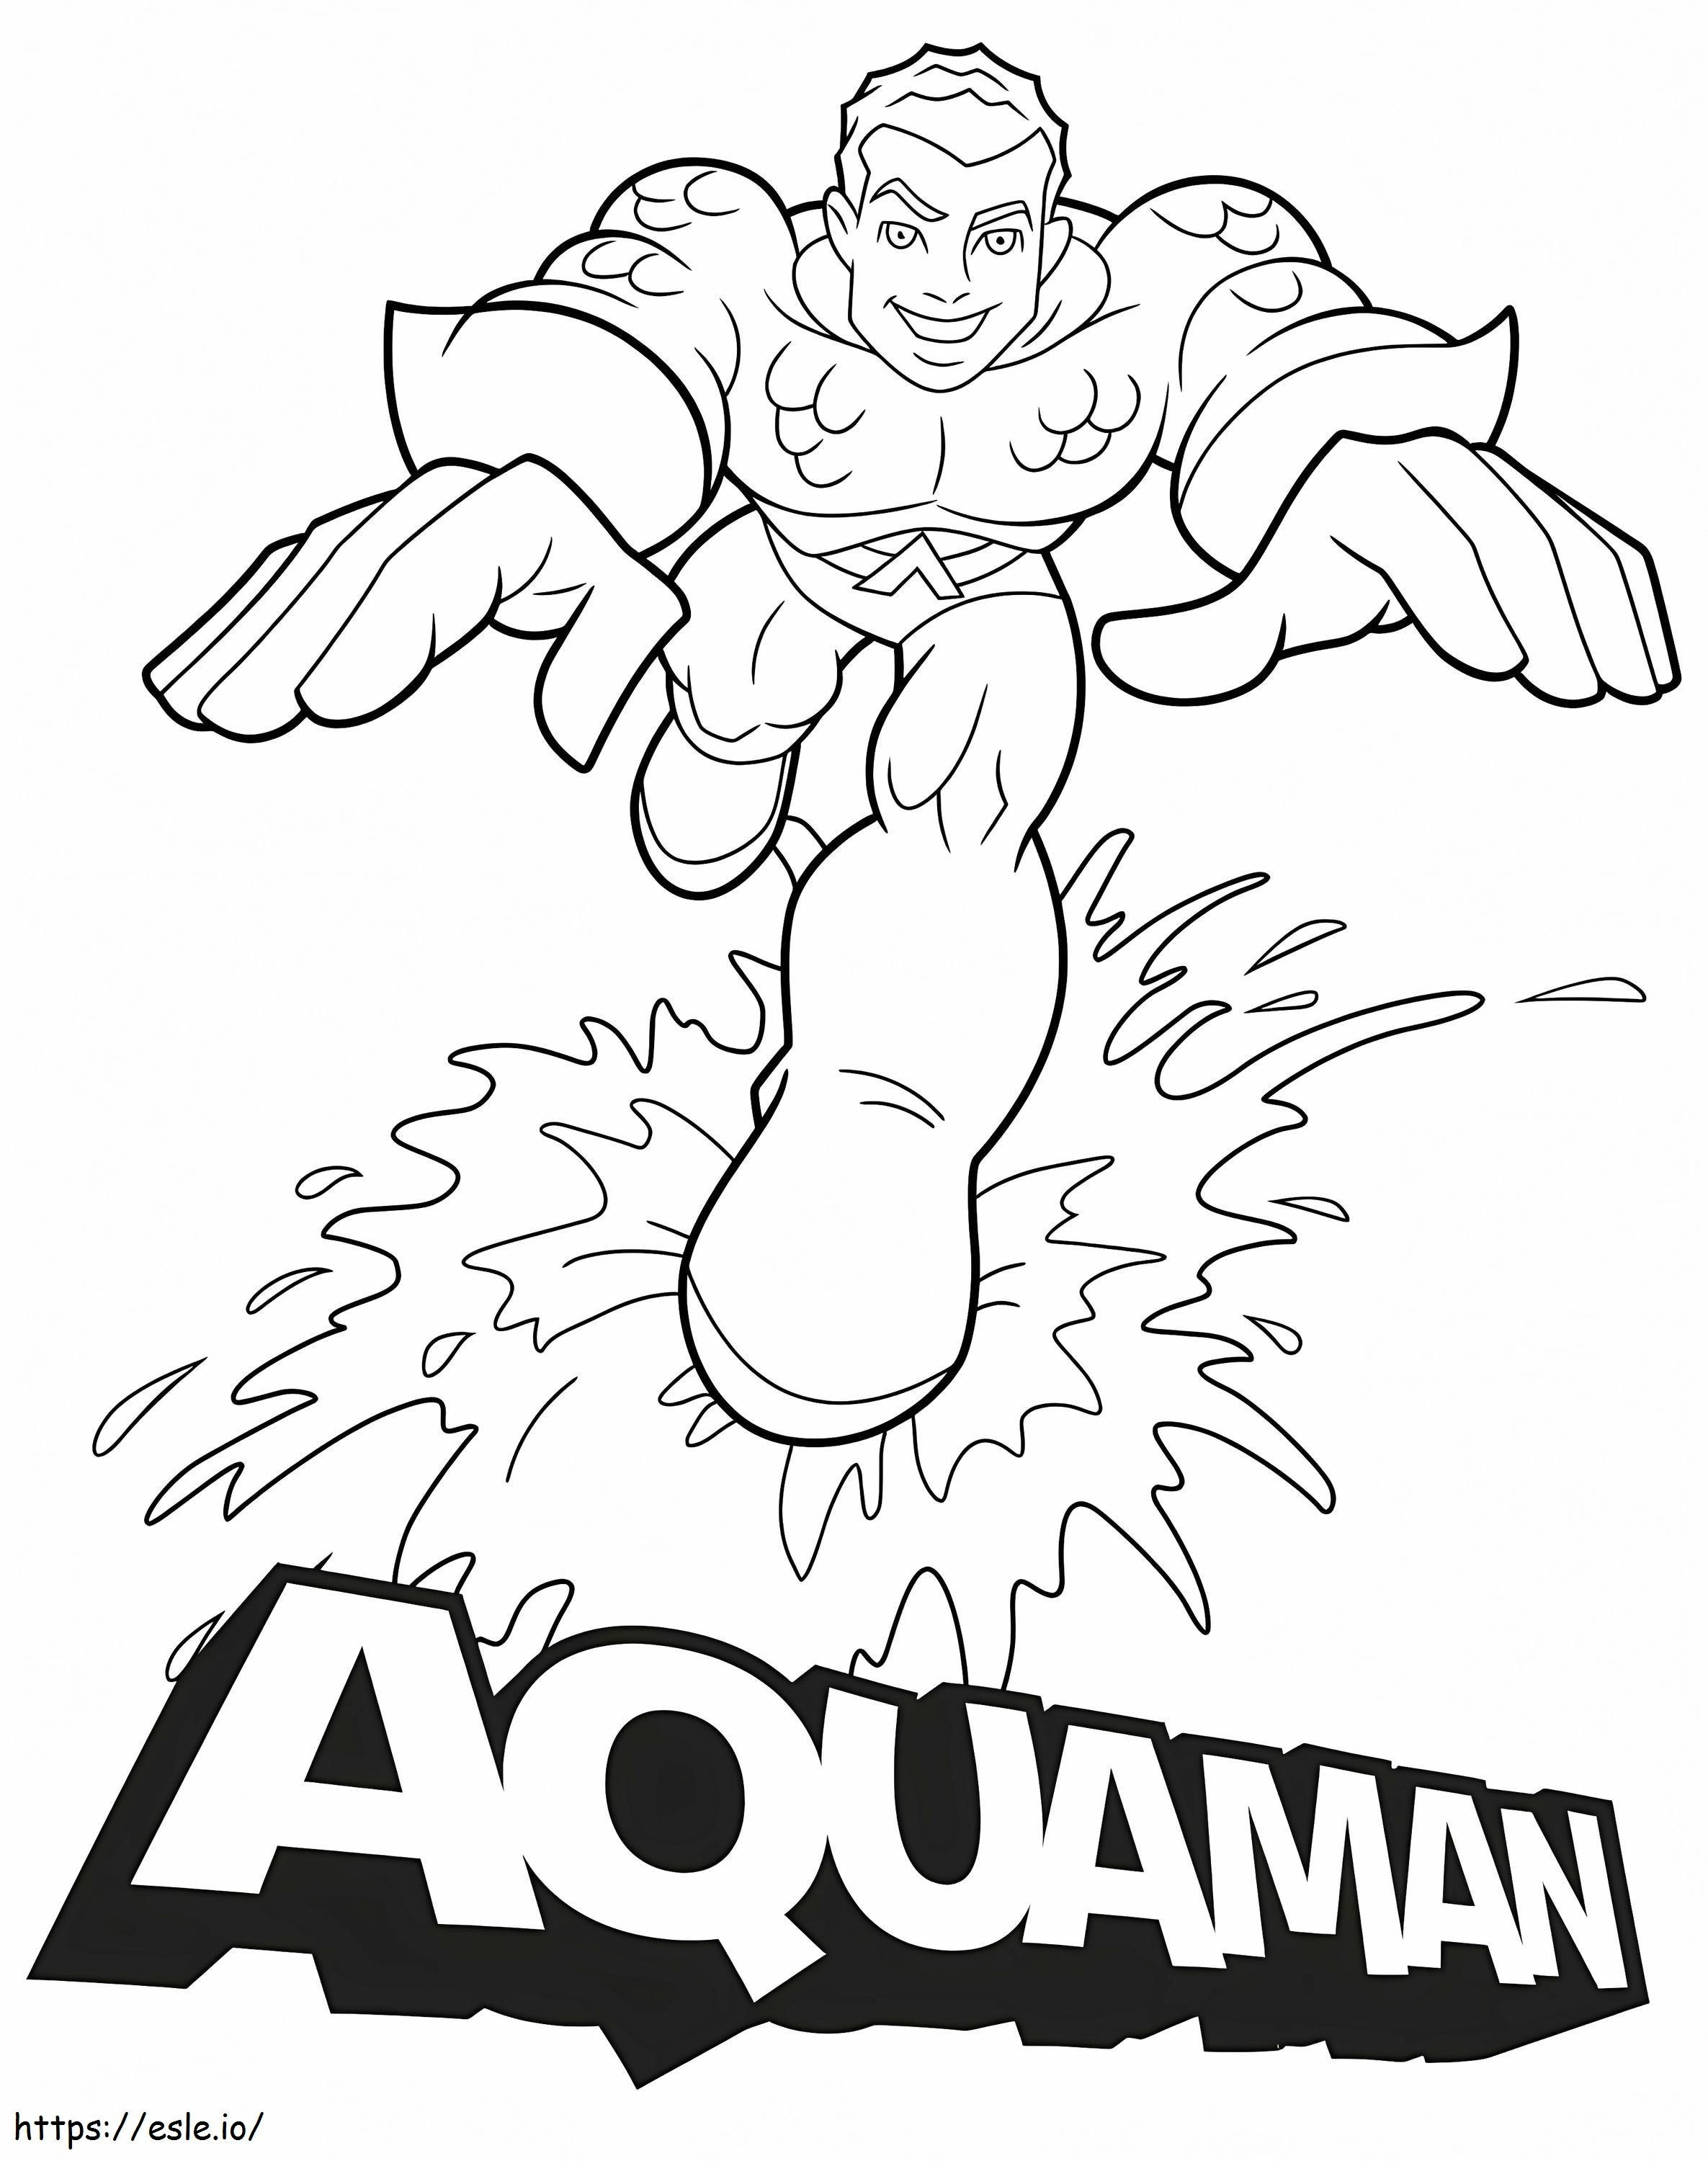 Aquaman 12 coloring page